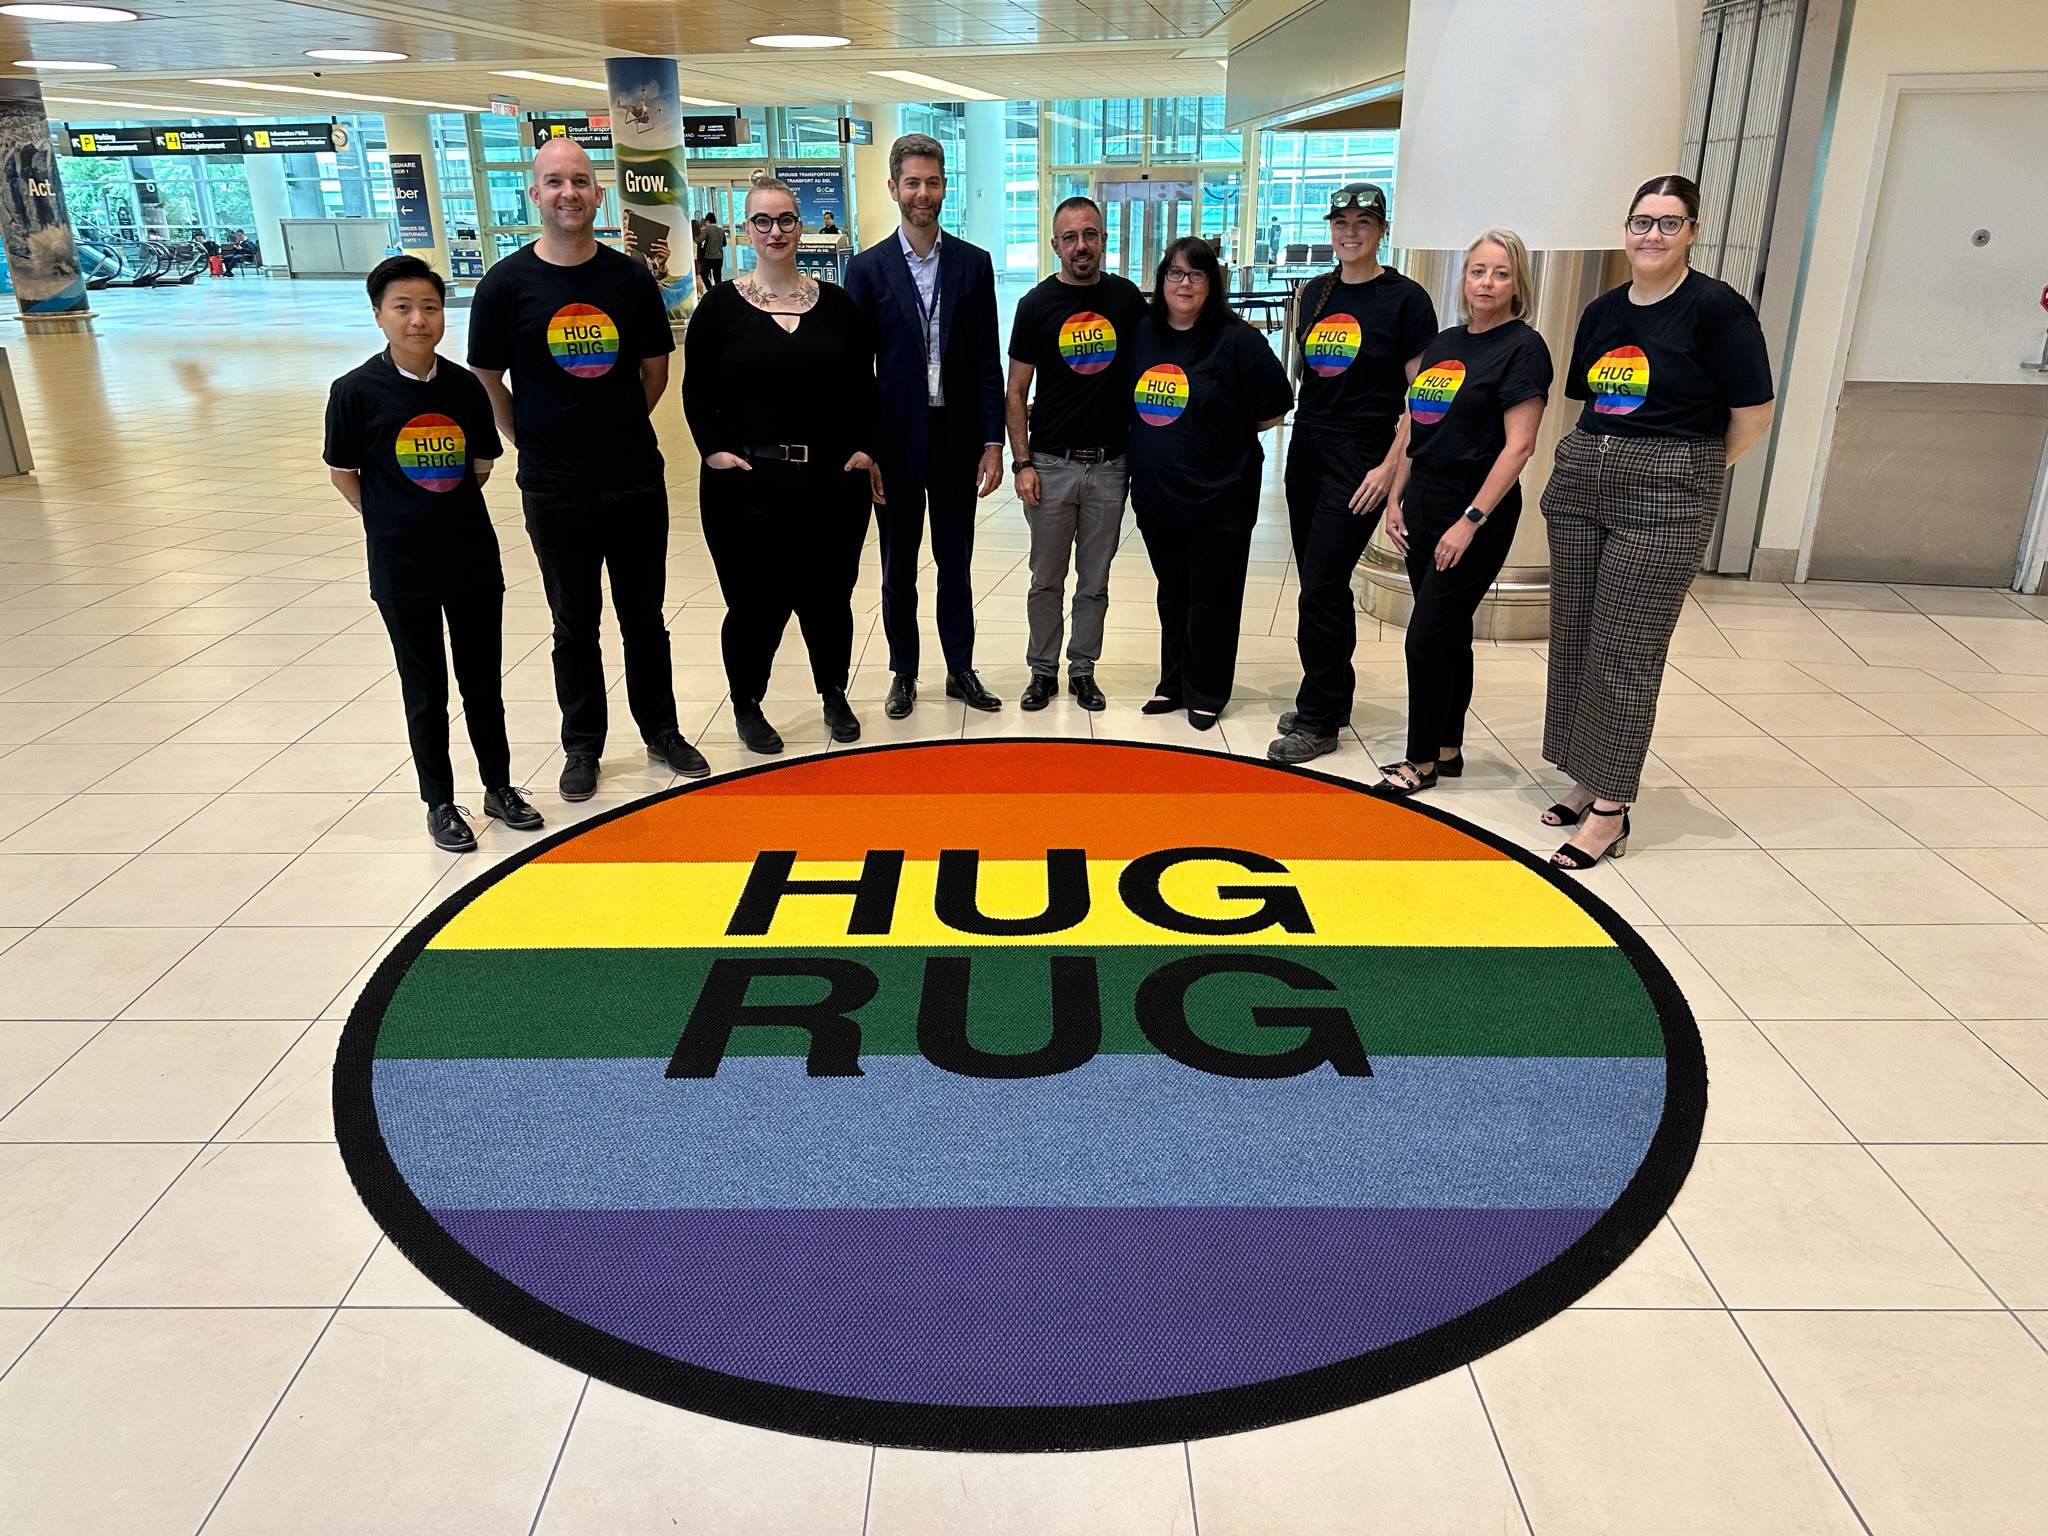 Les employes de l’AAW se tiennent autour d’un Hug Rug sur le thème de la fierté dans le hall des arrivées de l'aéroport international Richardson de Winnipeg.